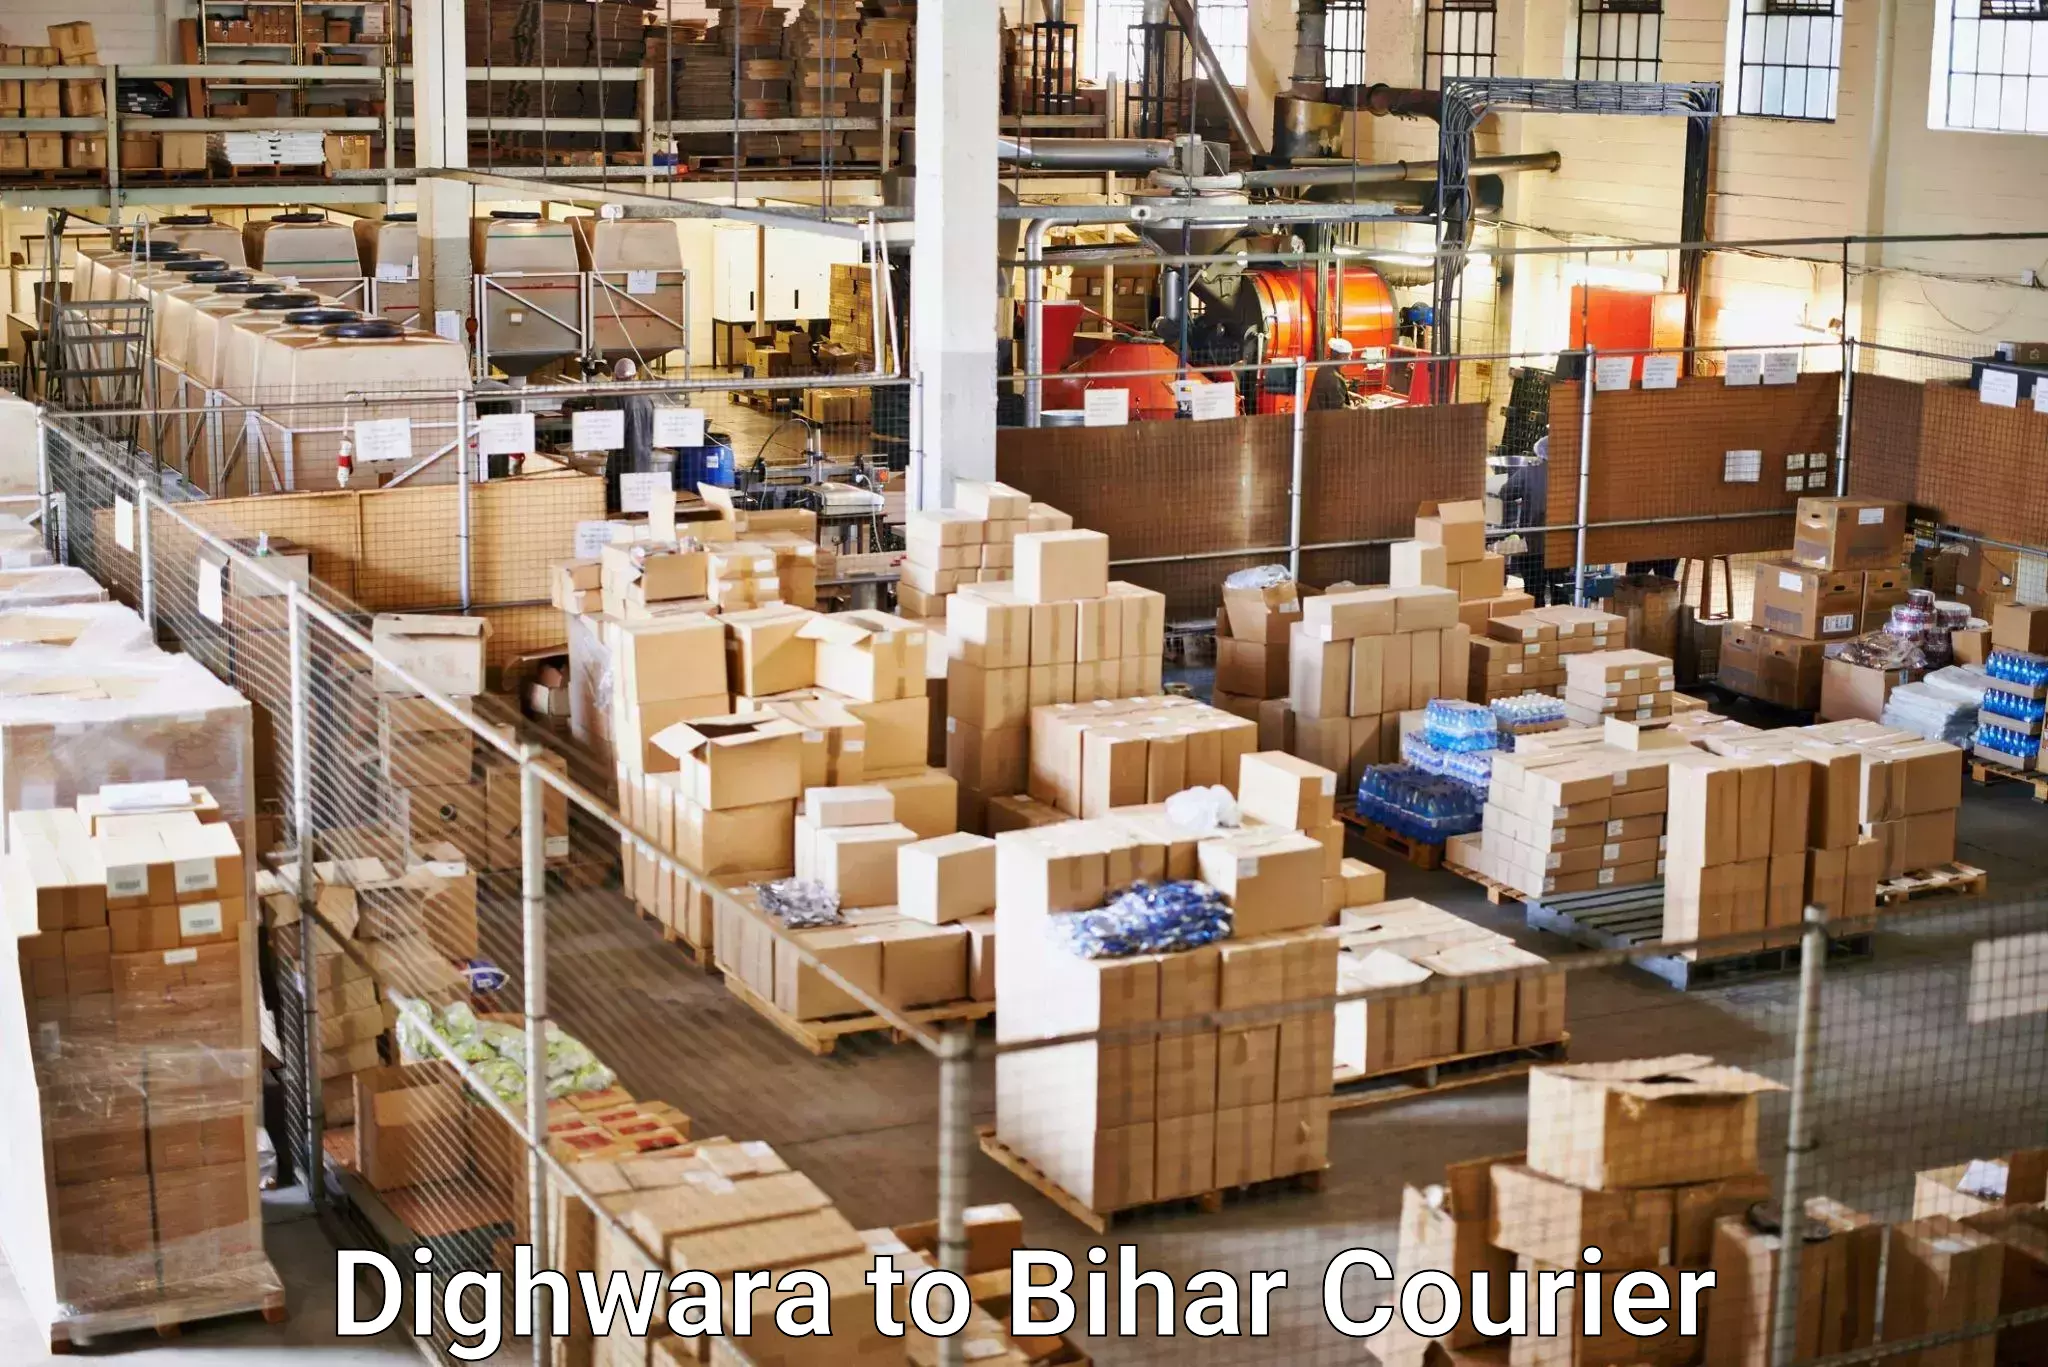 Urgent courier needs Dighwara to Bihar